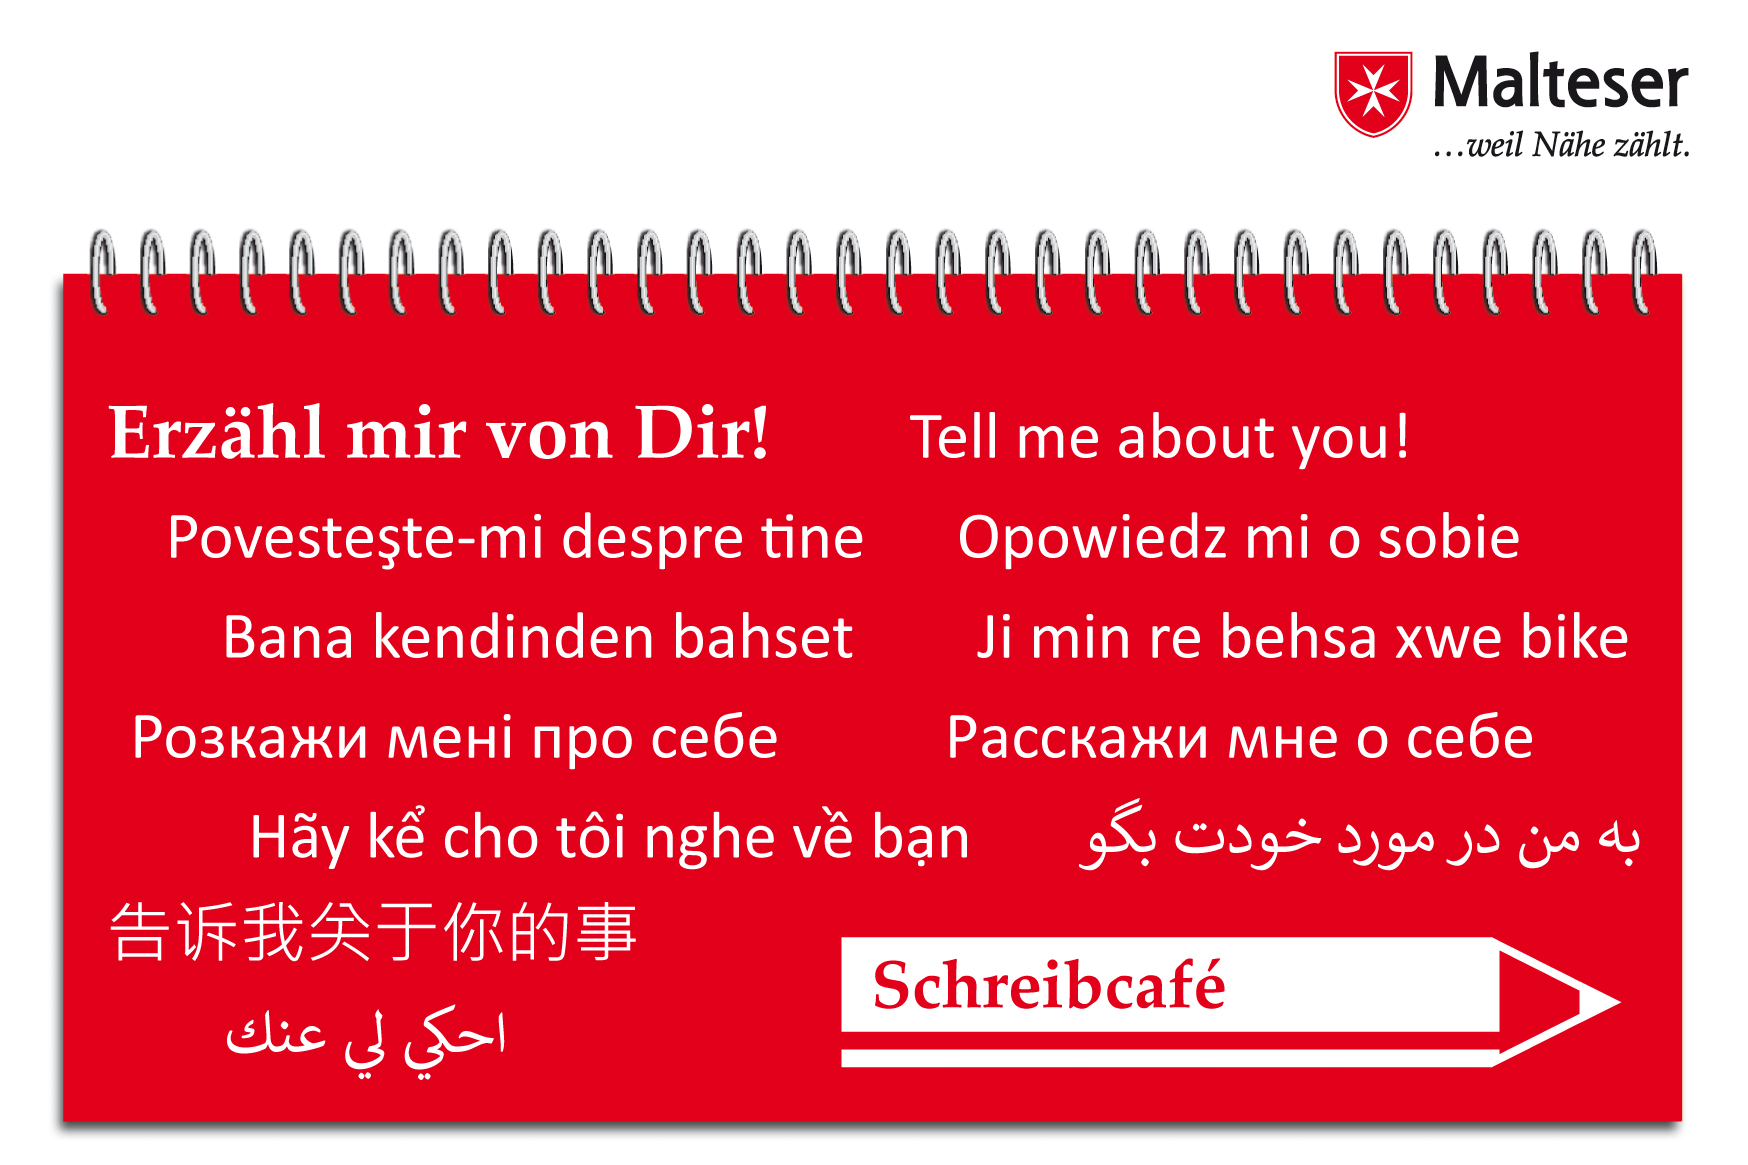 Auf einem Notizblock steht der Satz "Erzähl mir von dir" in verschiedenen Sprachen.